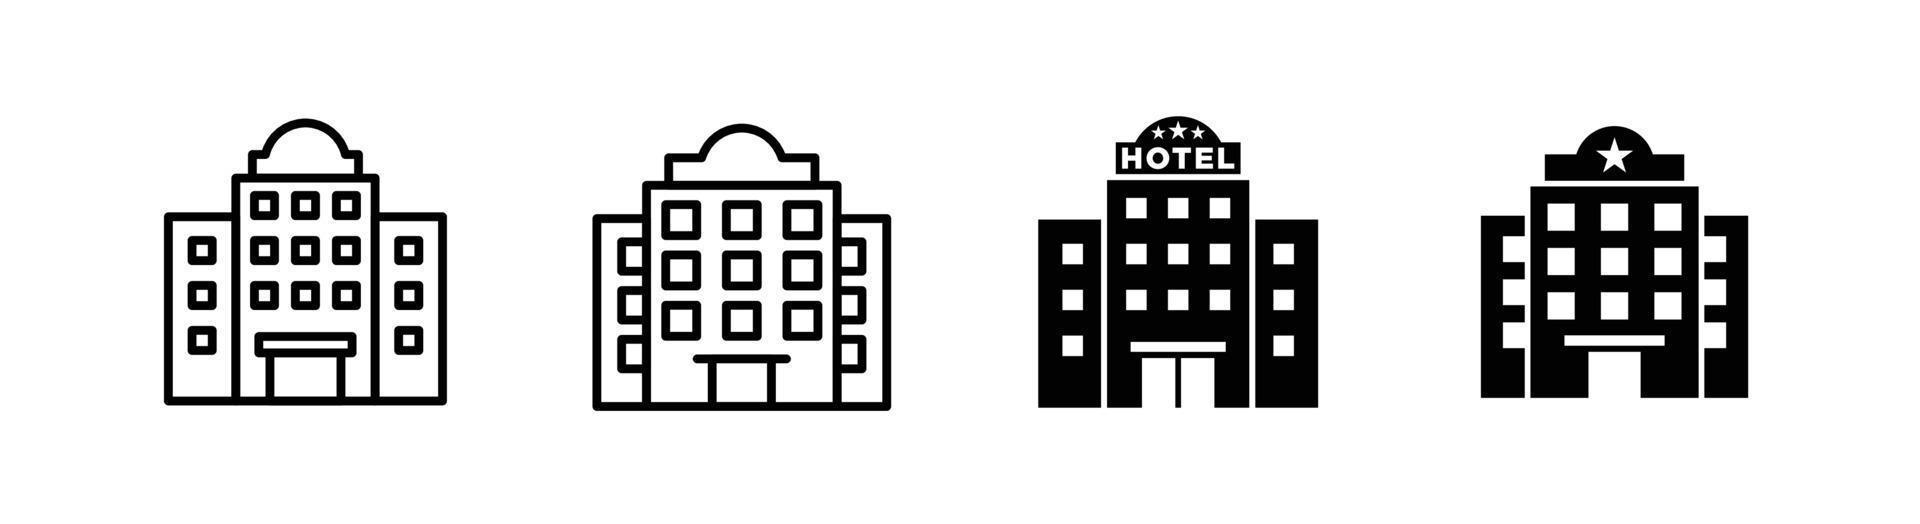 elemento di design dell'icona dell'edificio dell'hotel adatto per sito Web, design di stampa o app vettore